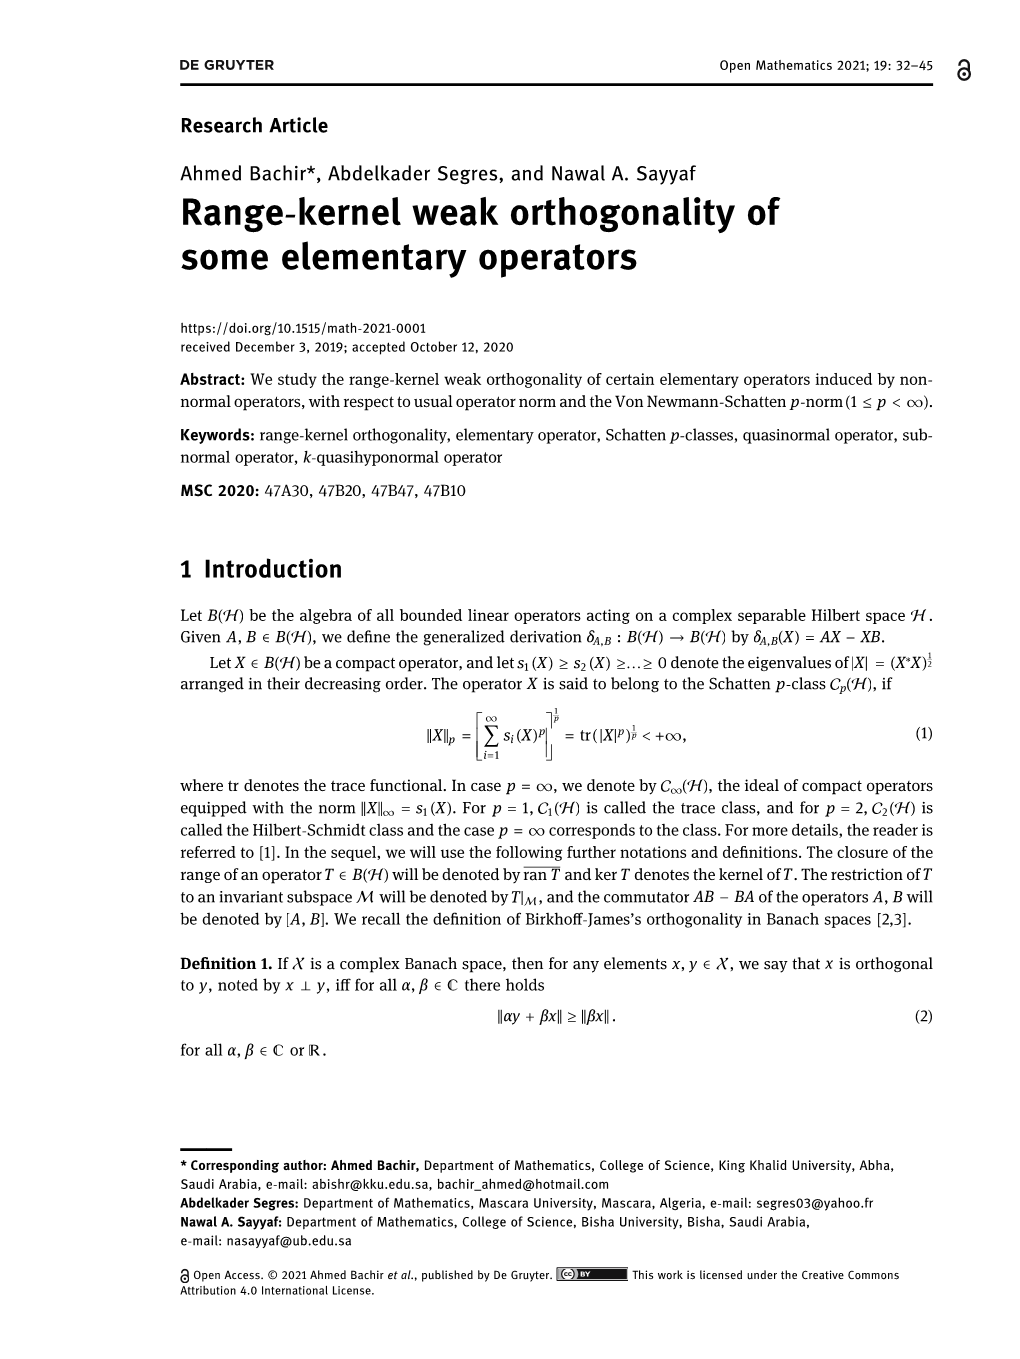 Range-Kernel Weak Orthogonality of Some Elementary Operators